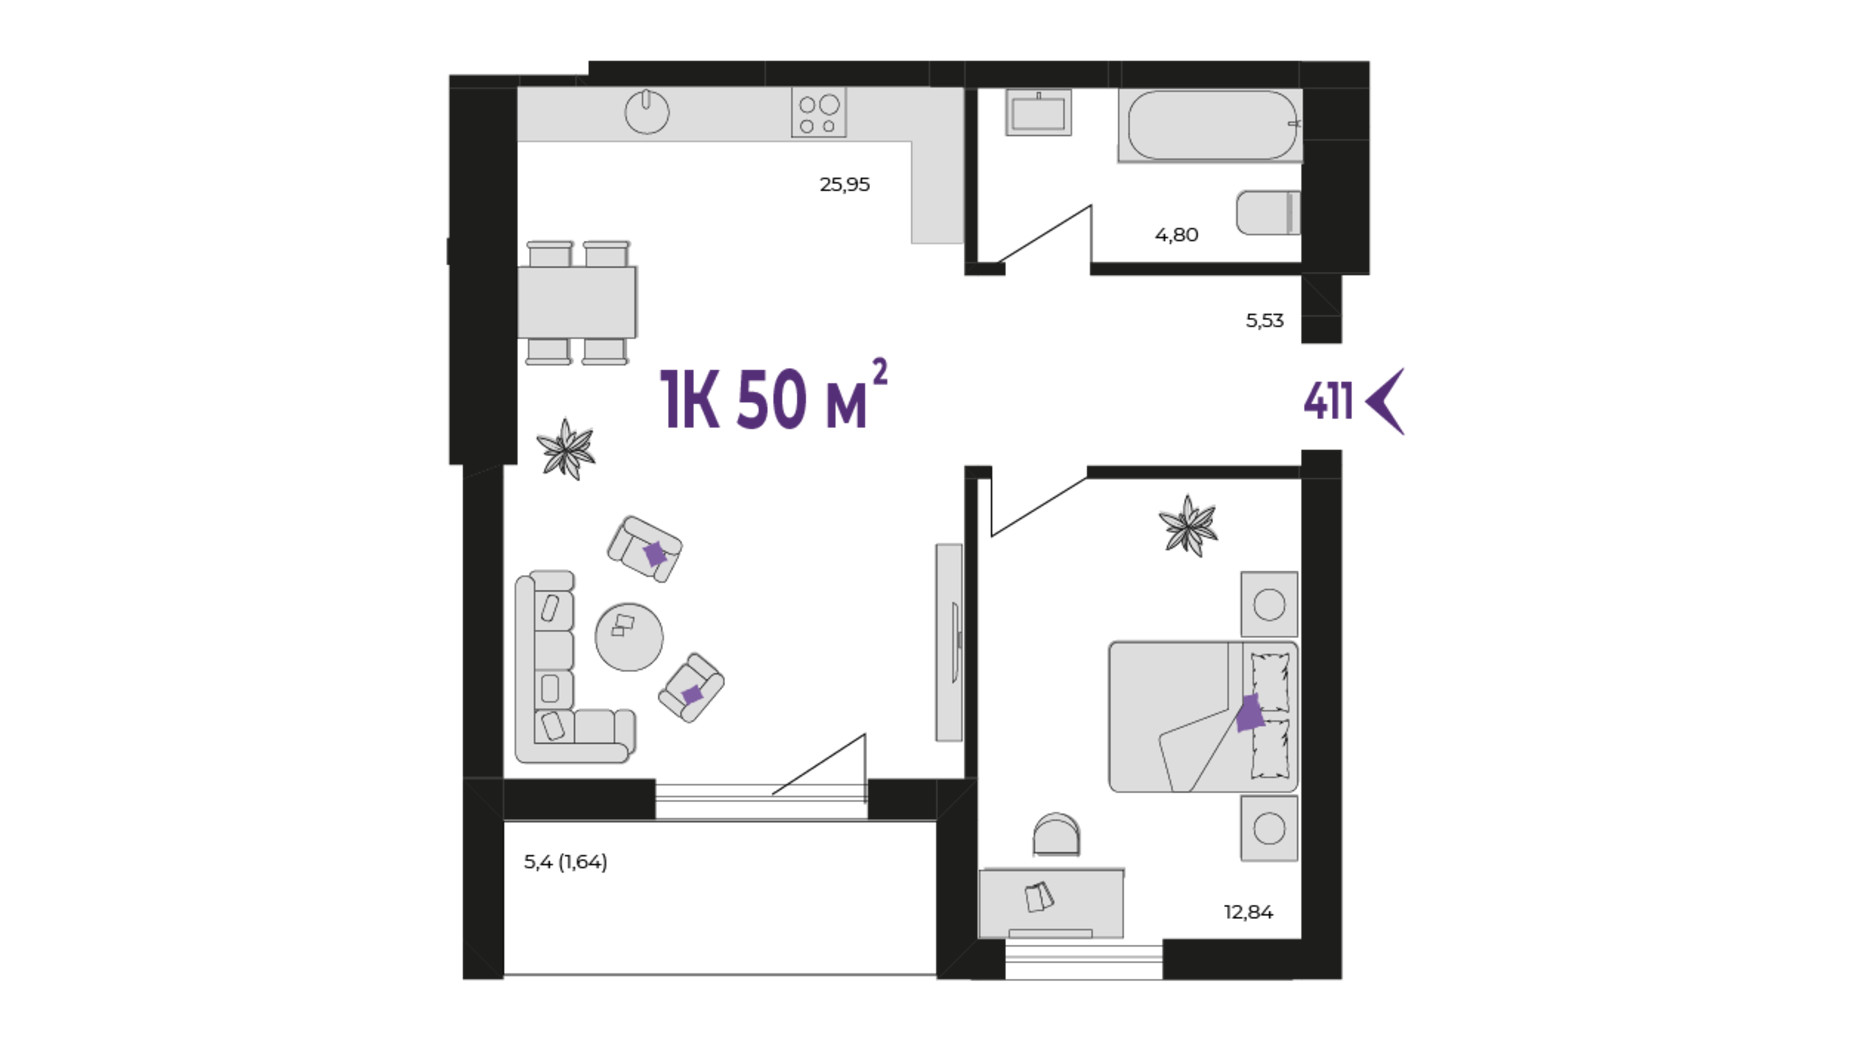 Планування 1-кімнатної квартири в ЖК Wawel 50 м², фото 651404